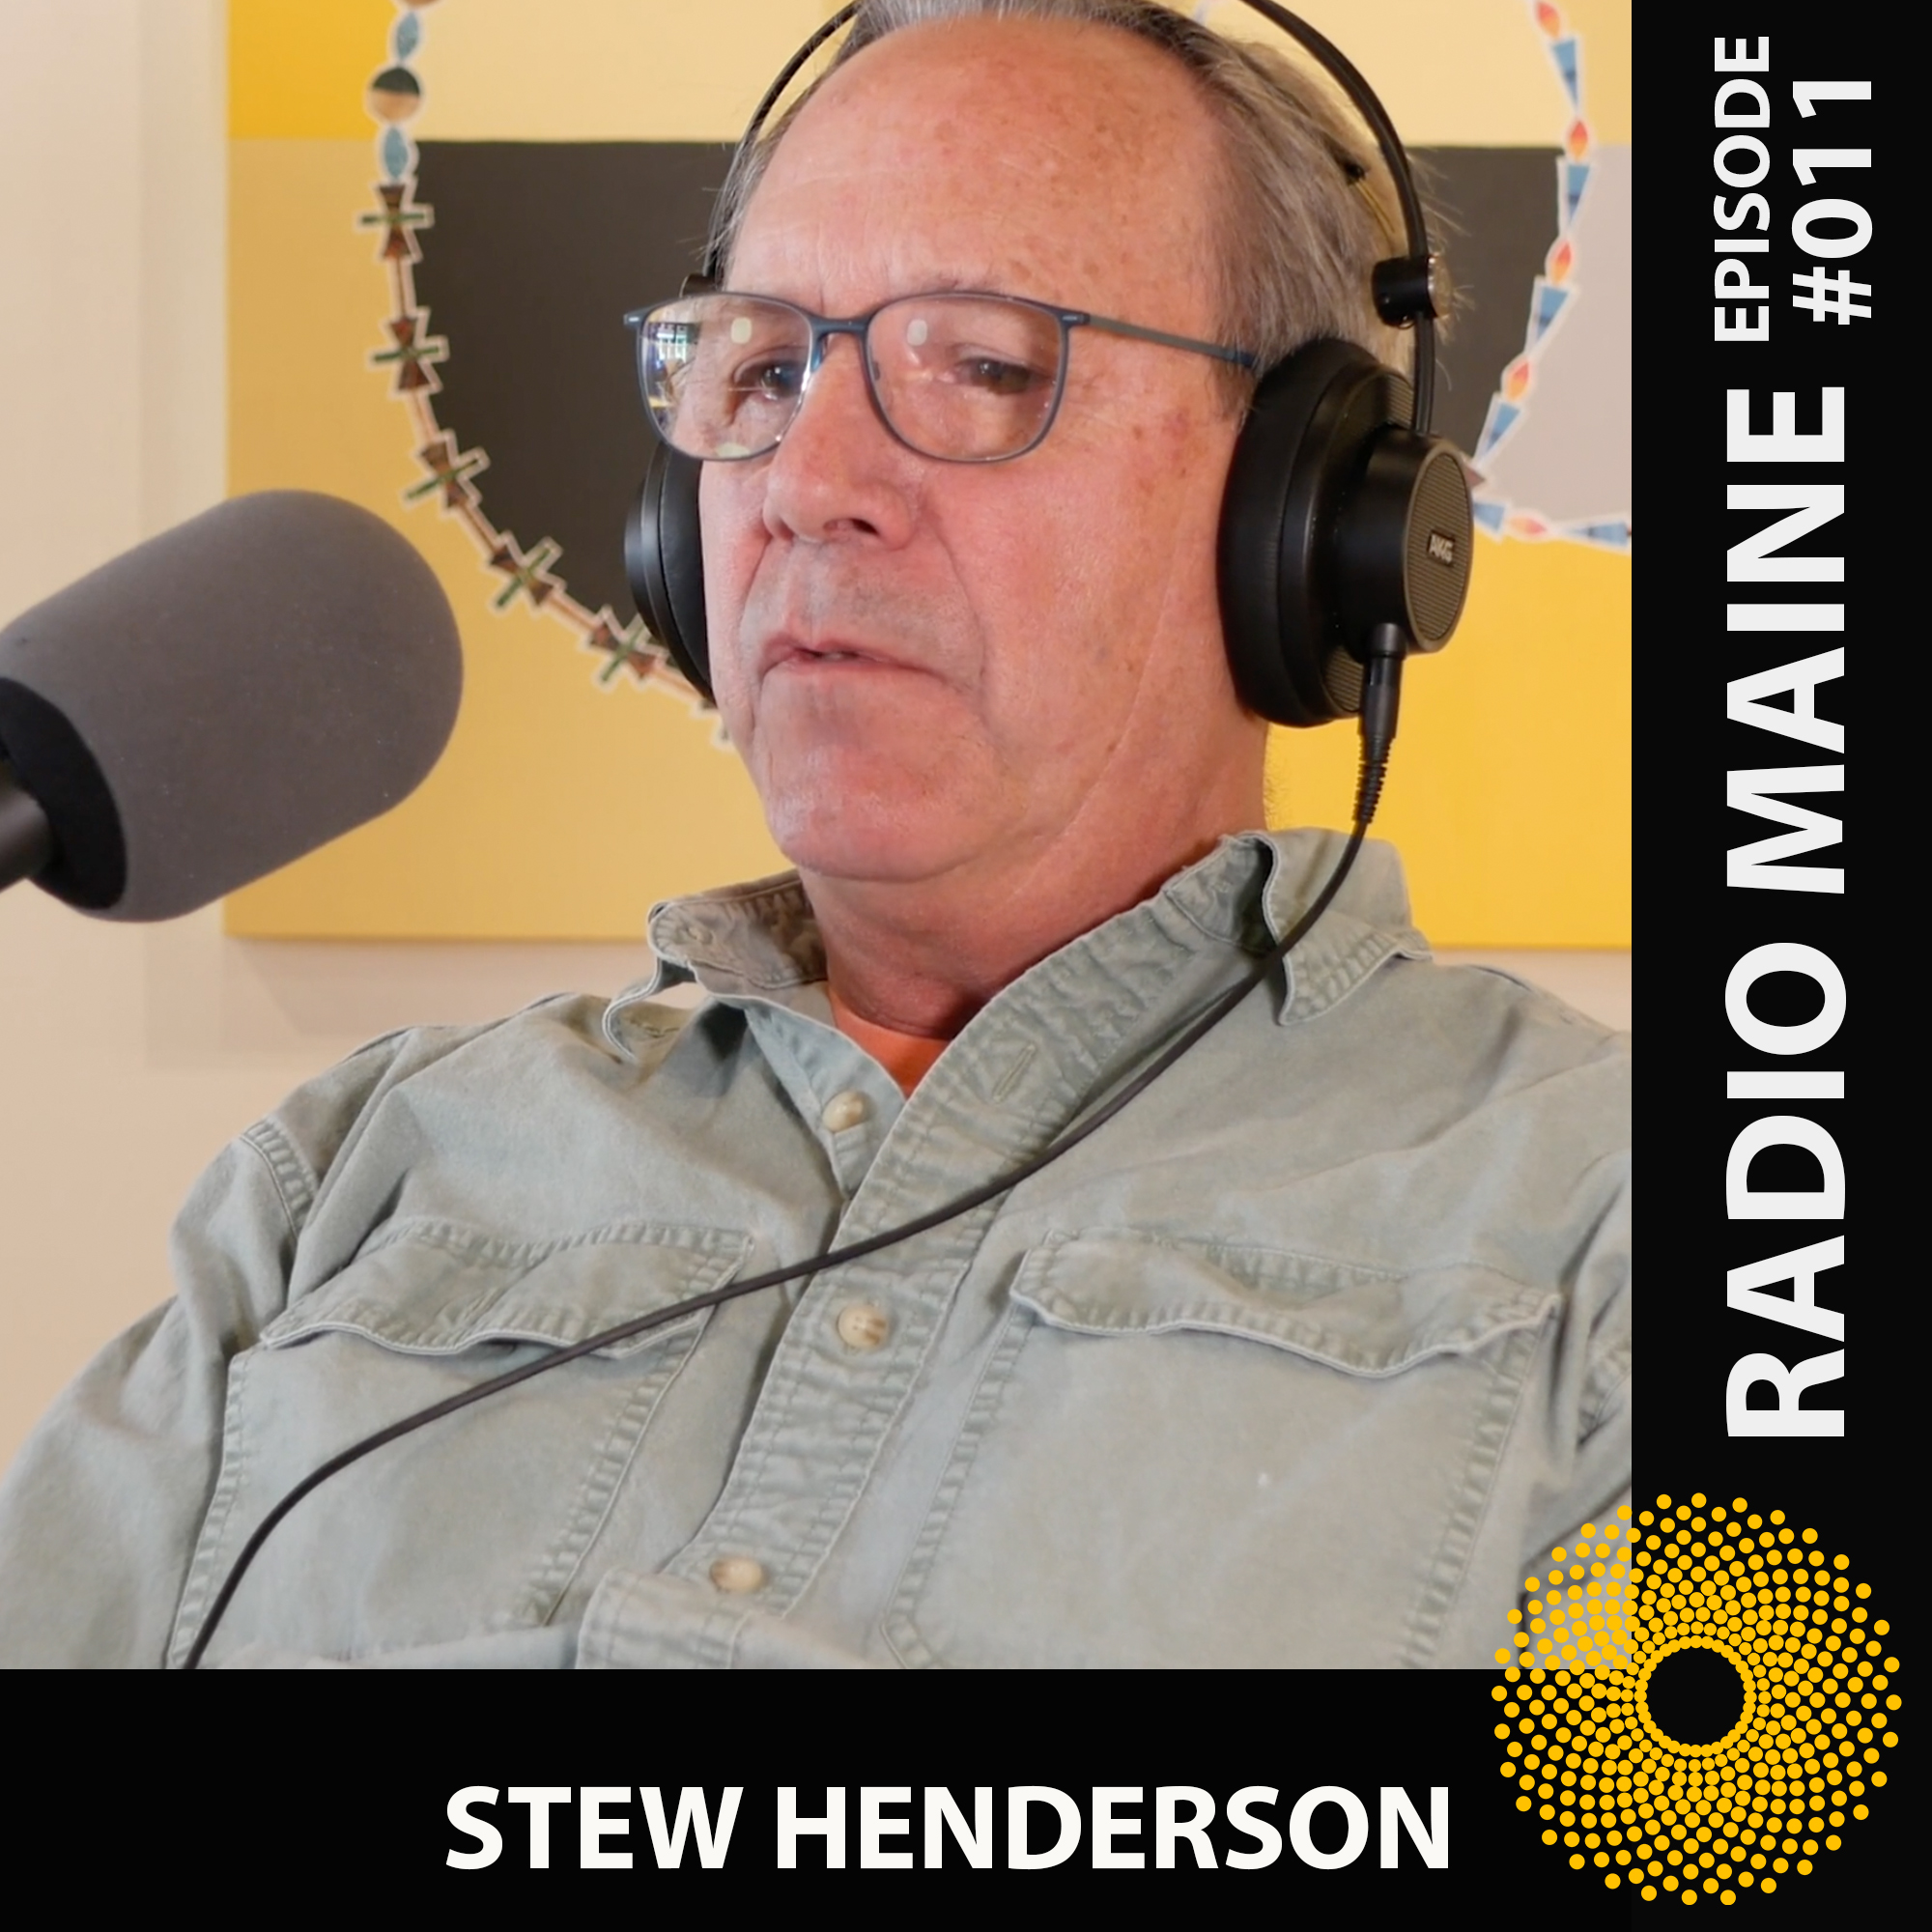 Maine artist Stew Henderson being interviewed on Radio Maine with Dr. Lisa Belisle